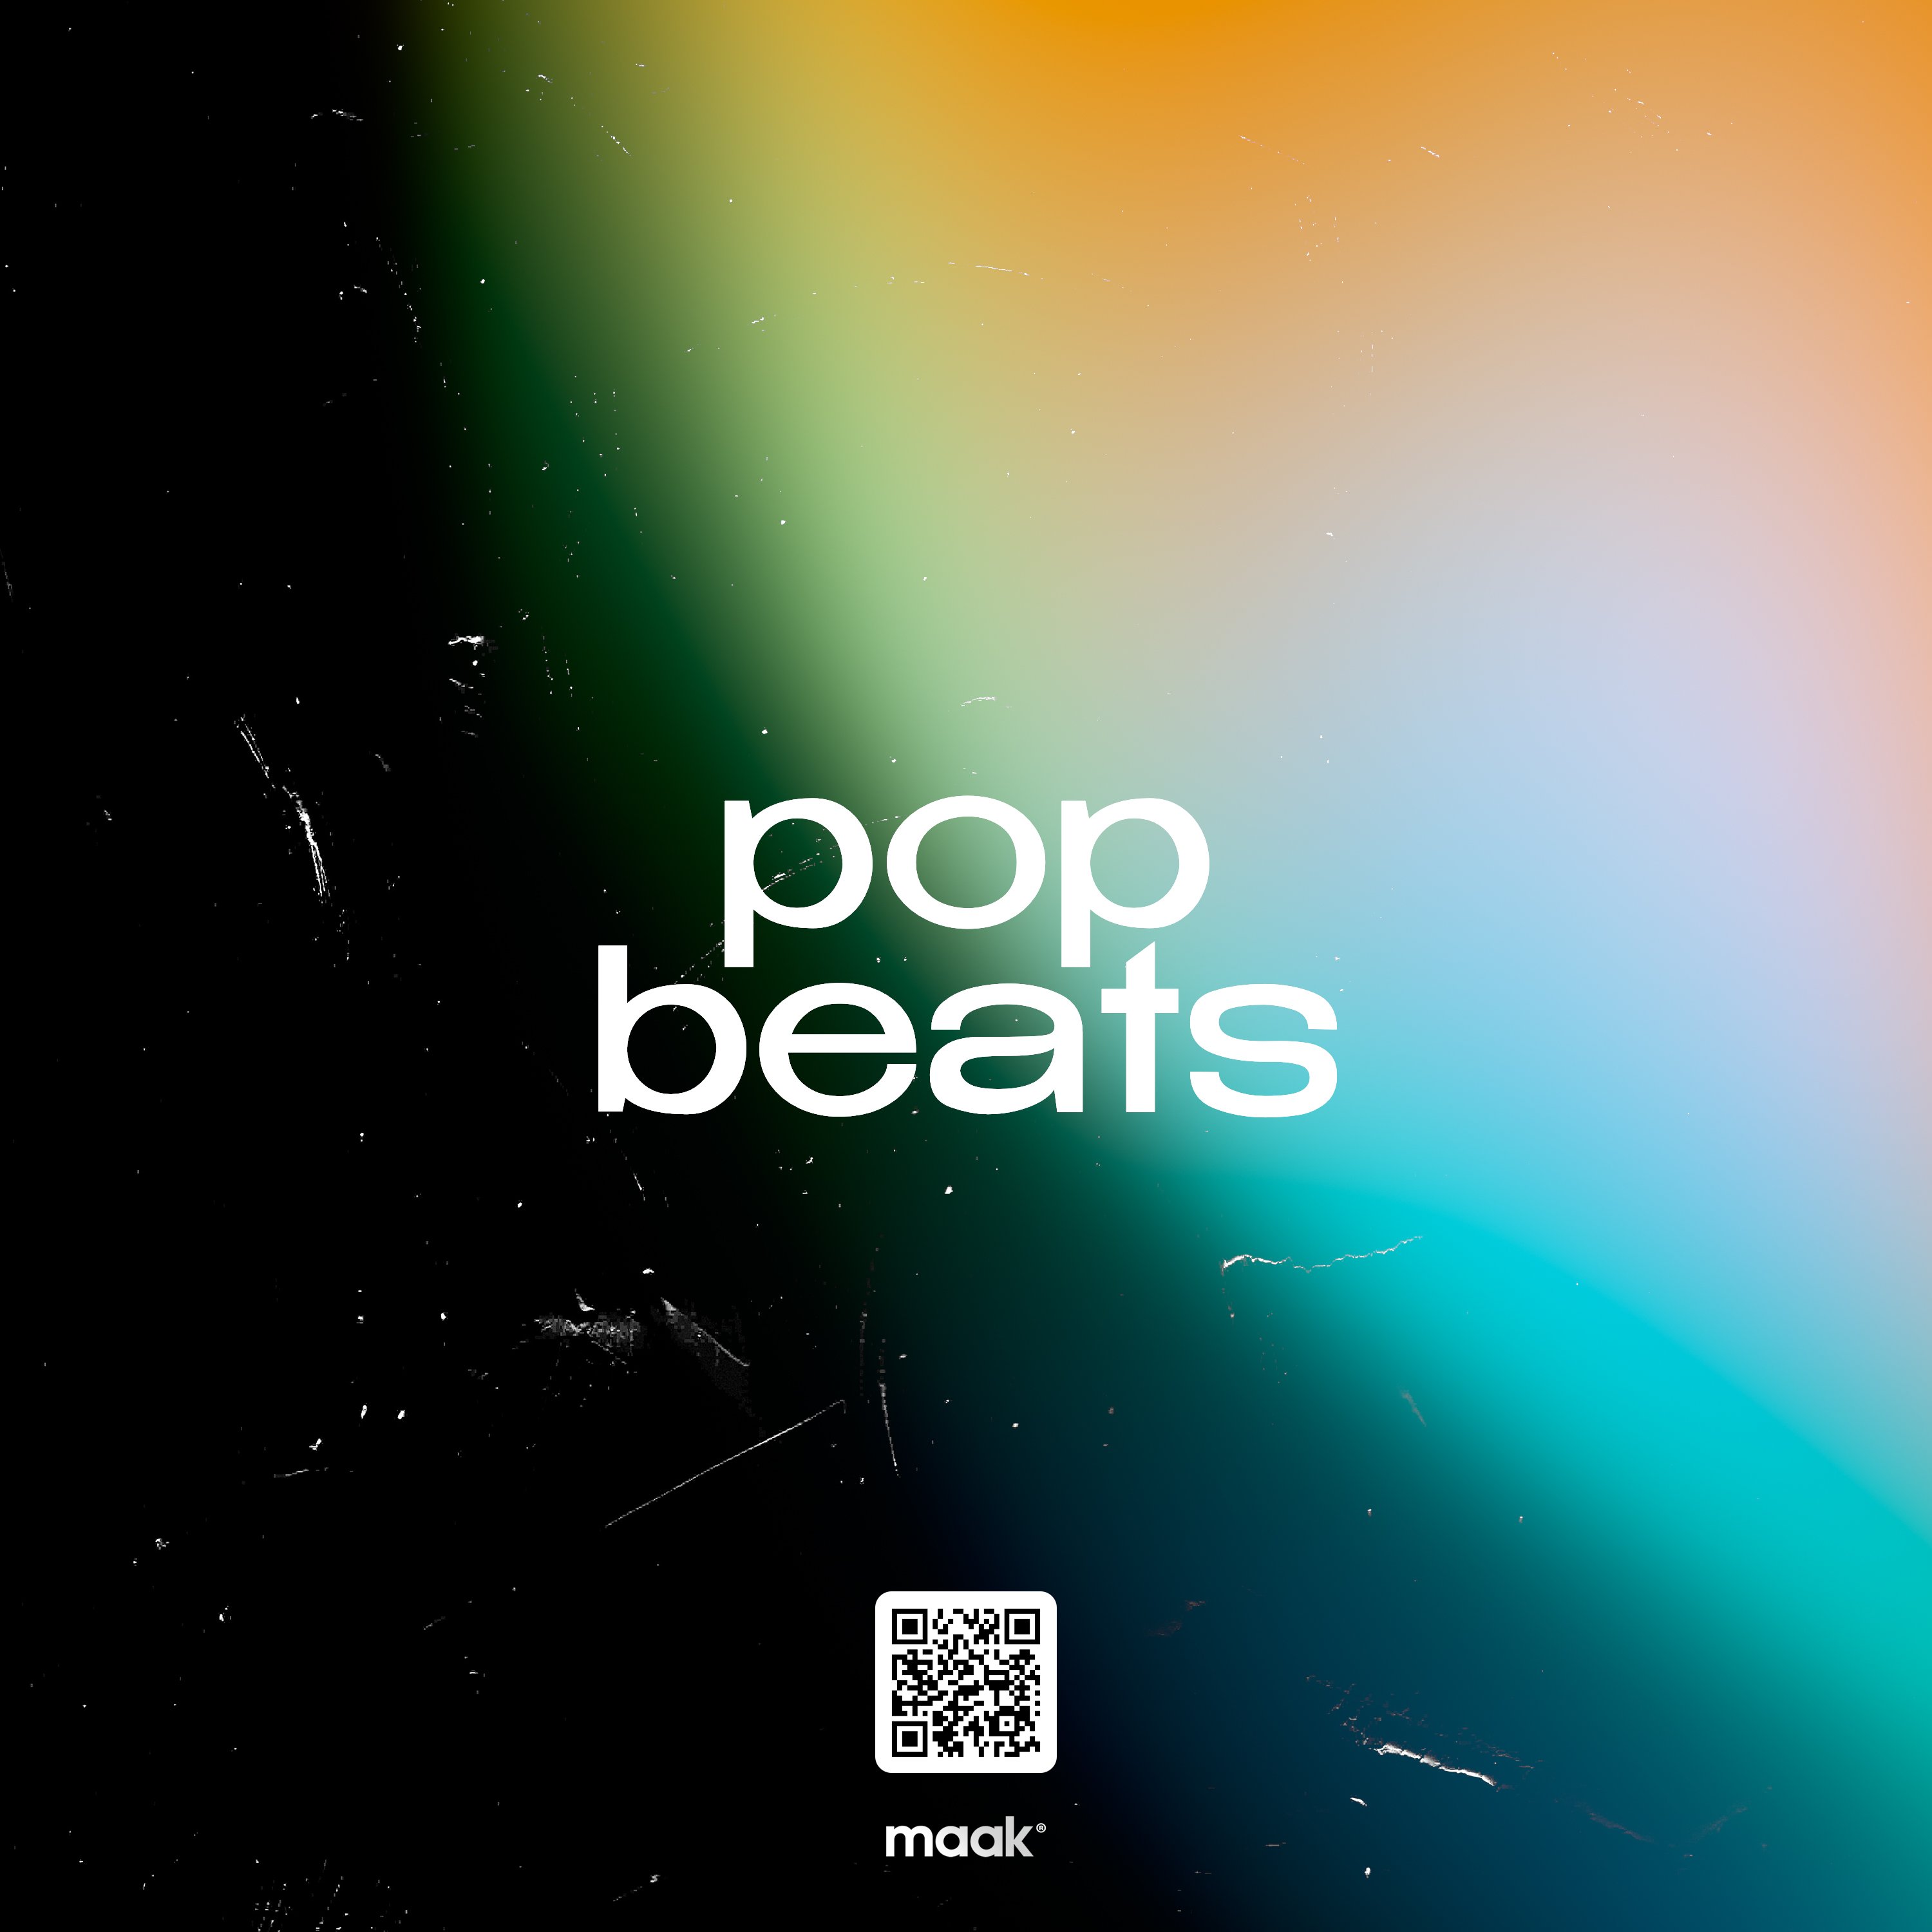 Pop Beats by maak